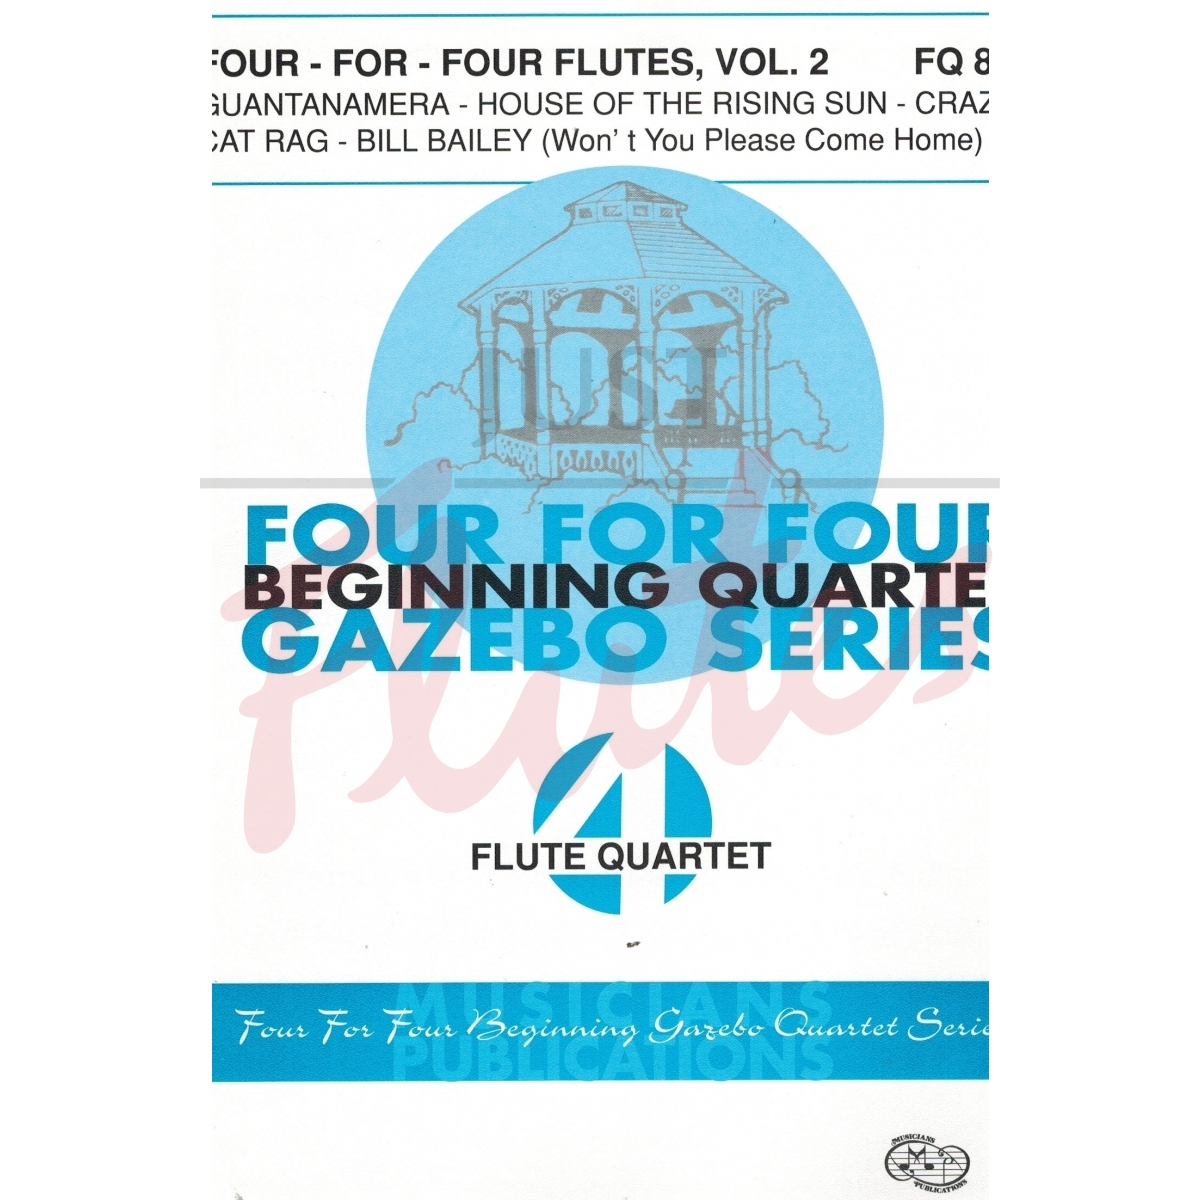 Four for Four Flutes, Vol 2